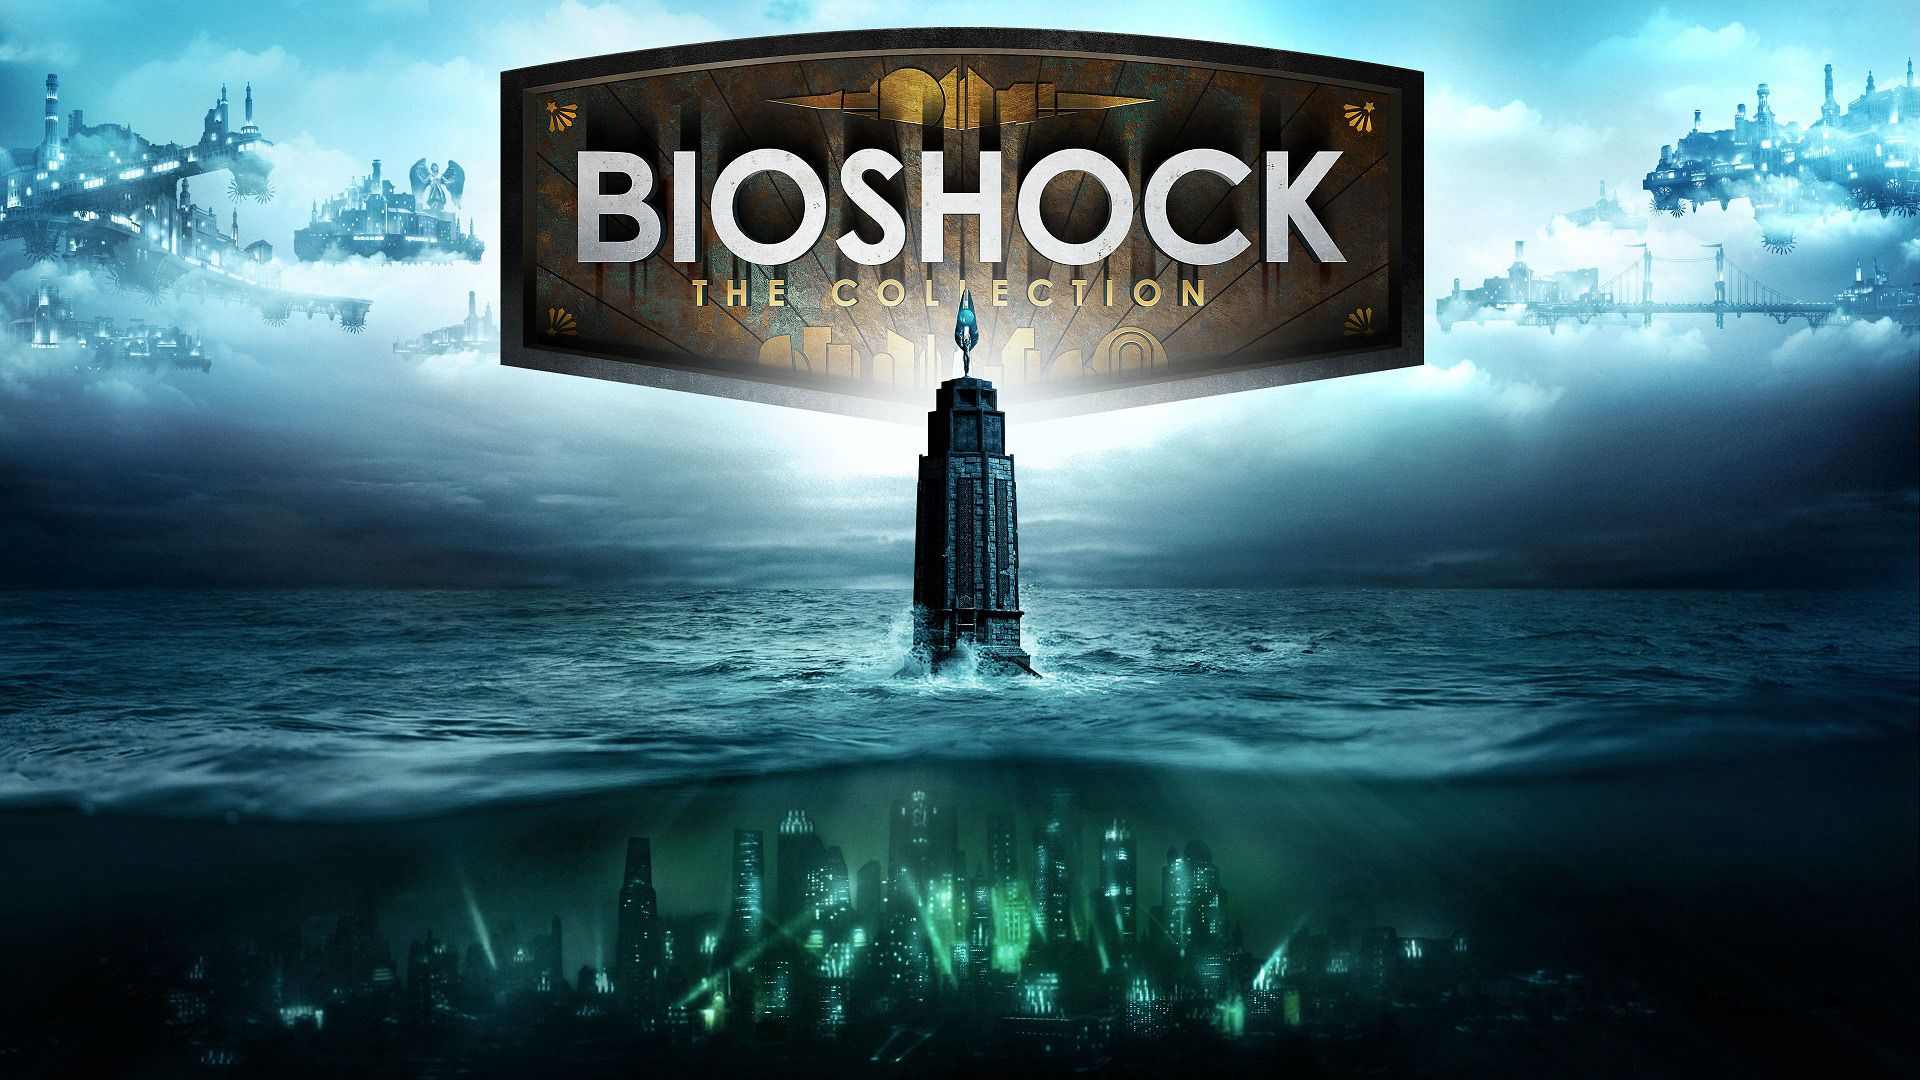 فیلم بایوشاک (Bioshock)